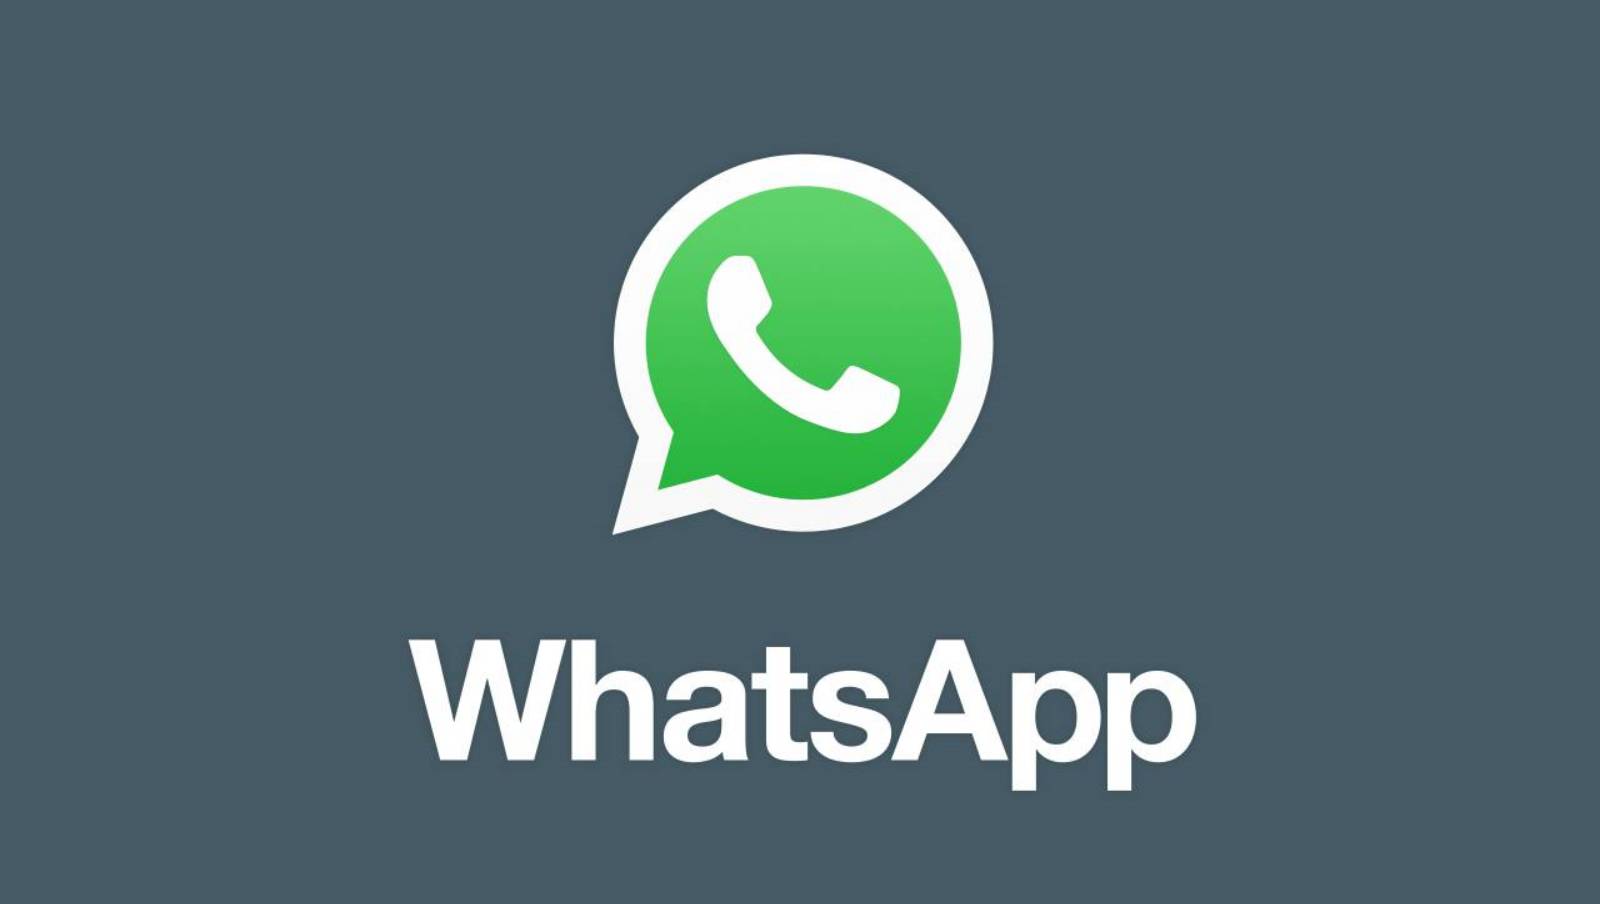 WhatsApp queries